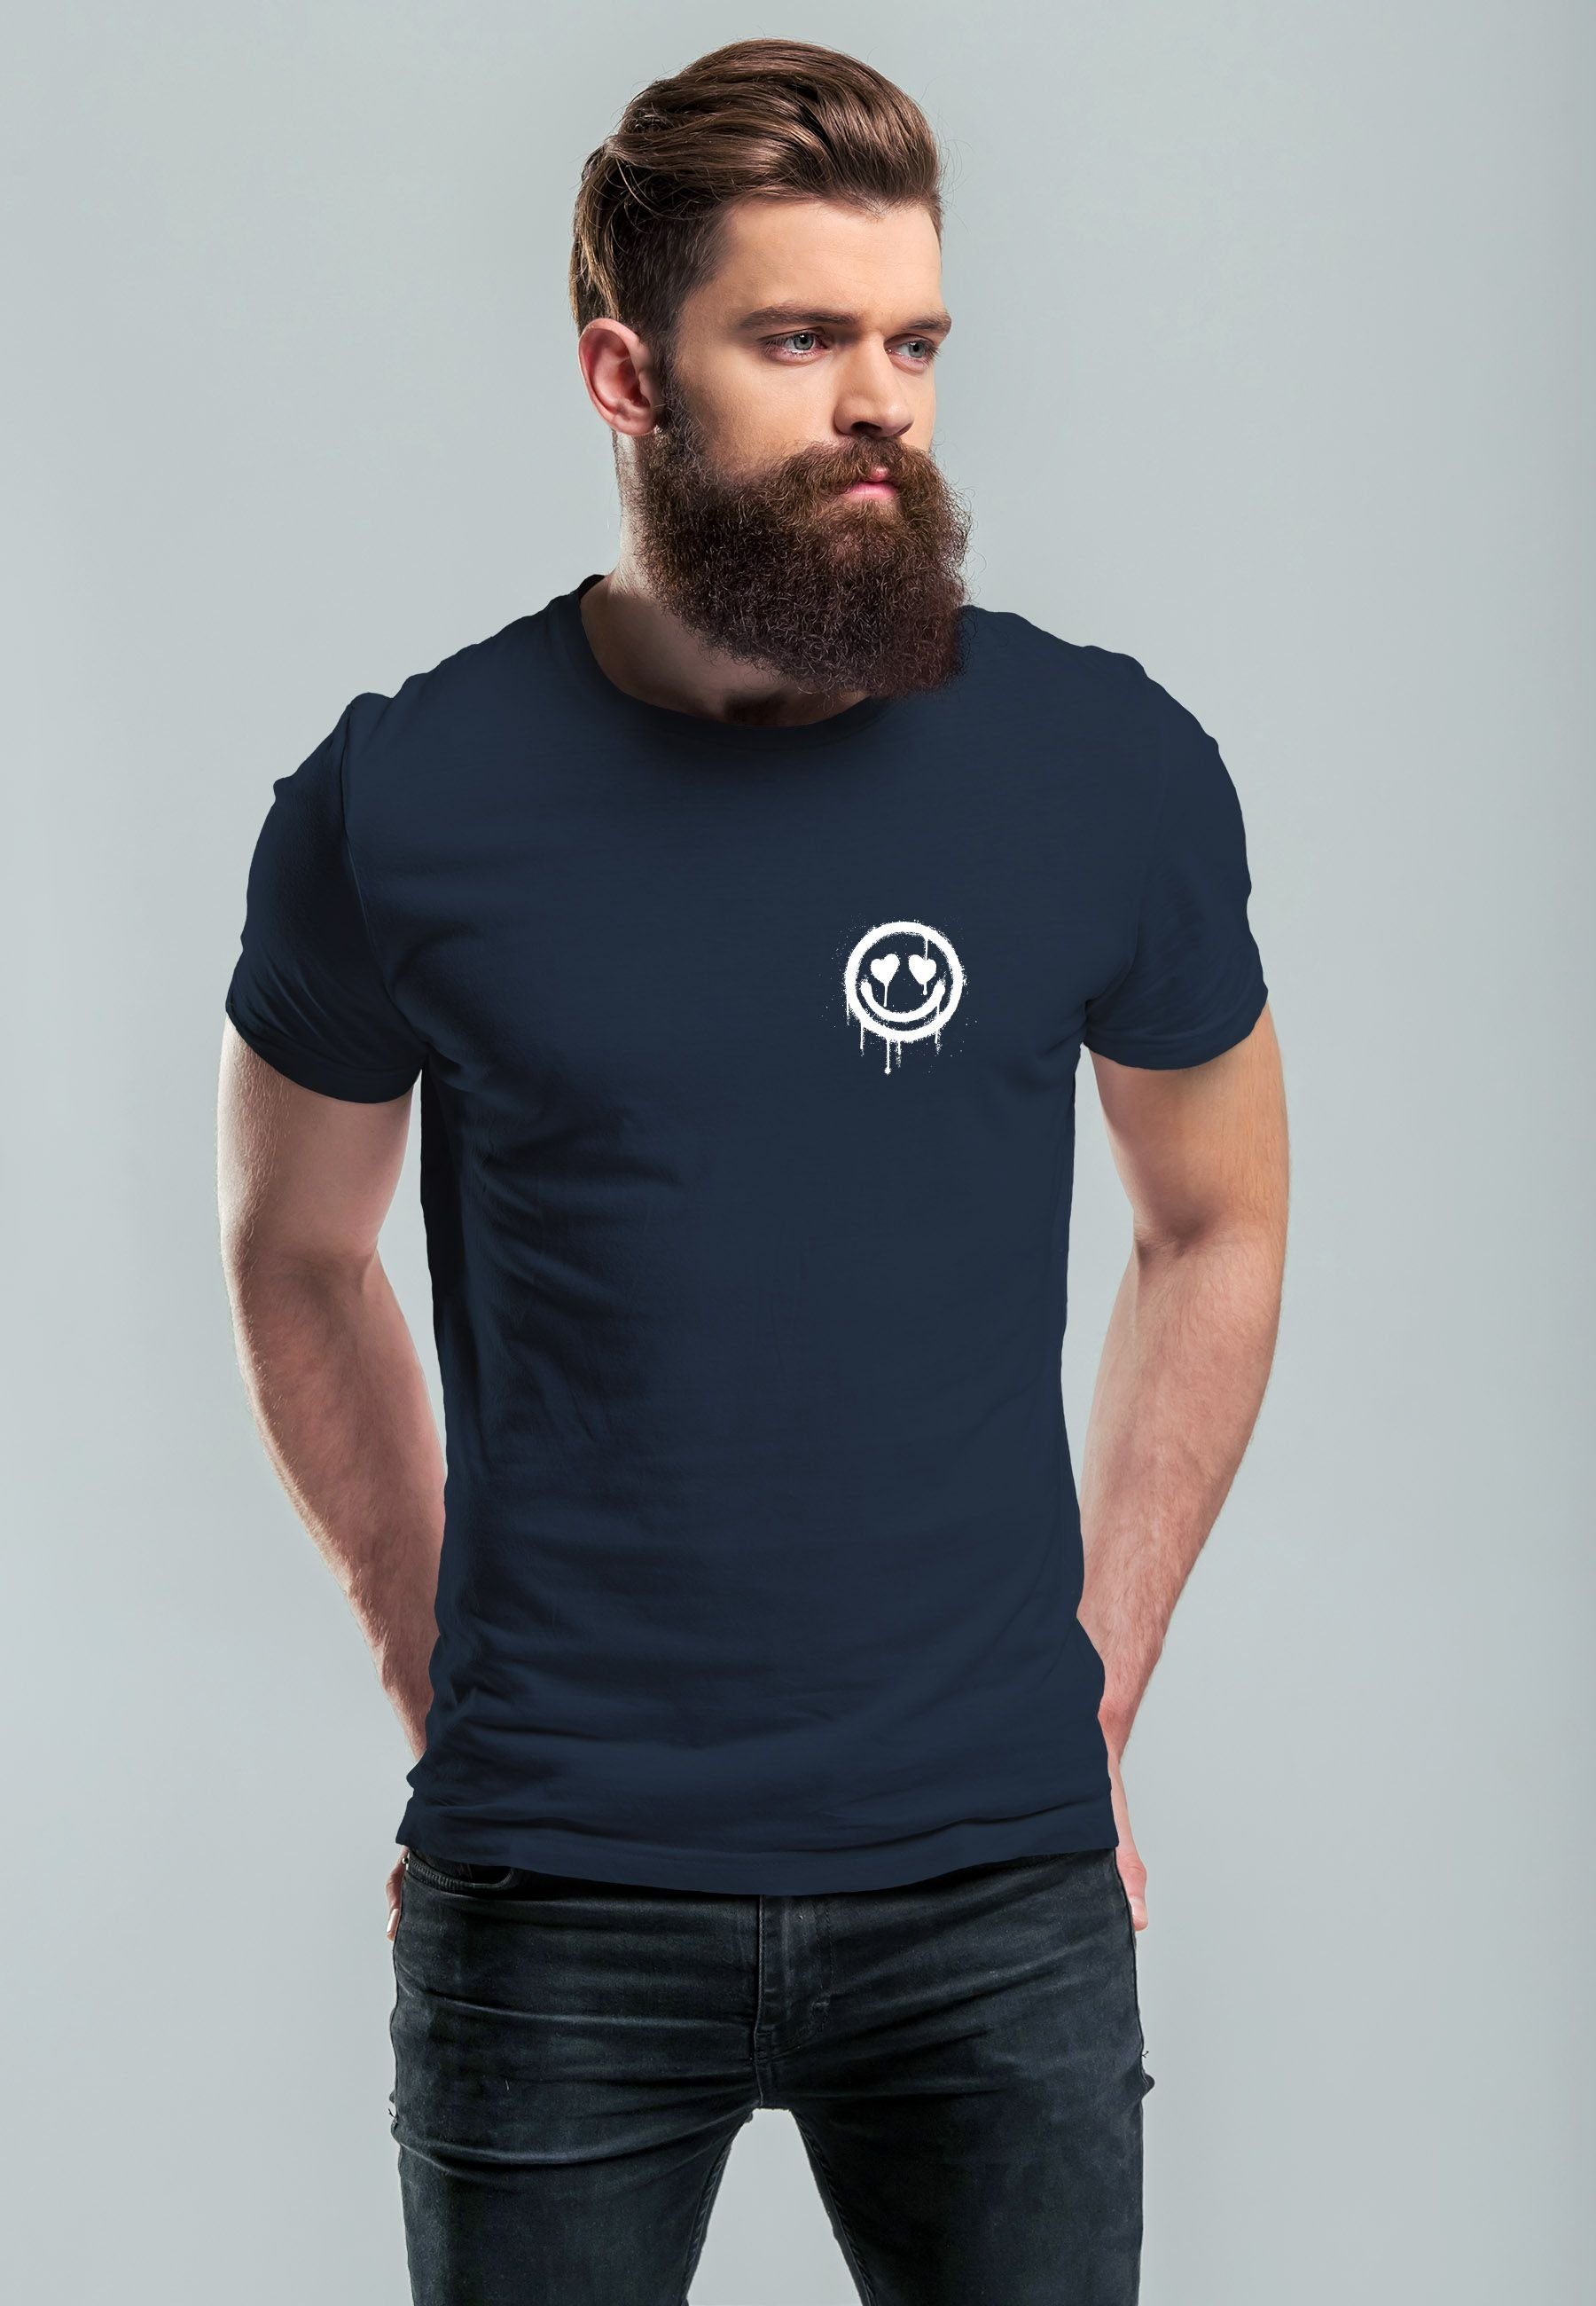 Neverless Print-Shirt Herren T-Shirt navy Motiv Print Print Aufdruck Smile Drip Drippy Face mit Herz-Augen